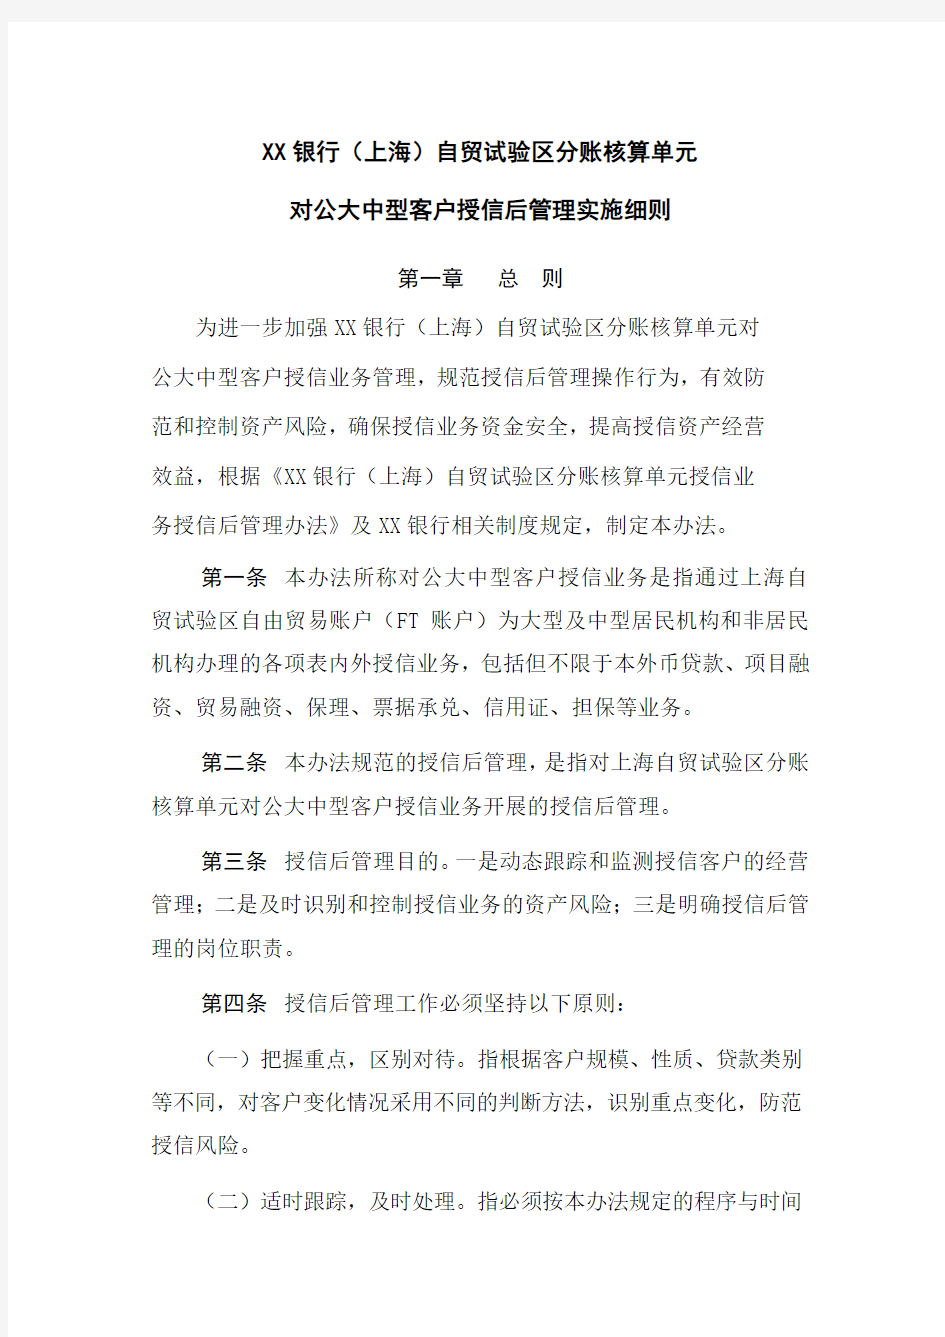 XX银行(上海)自贸试验区对公大中型客户授信业务授信后管理实施细则